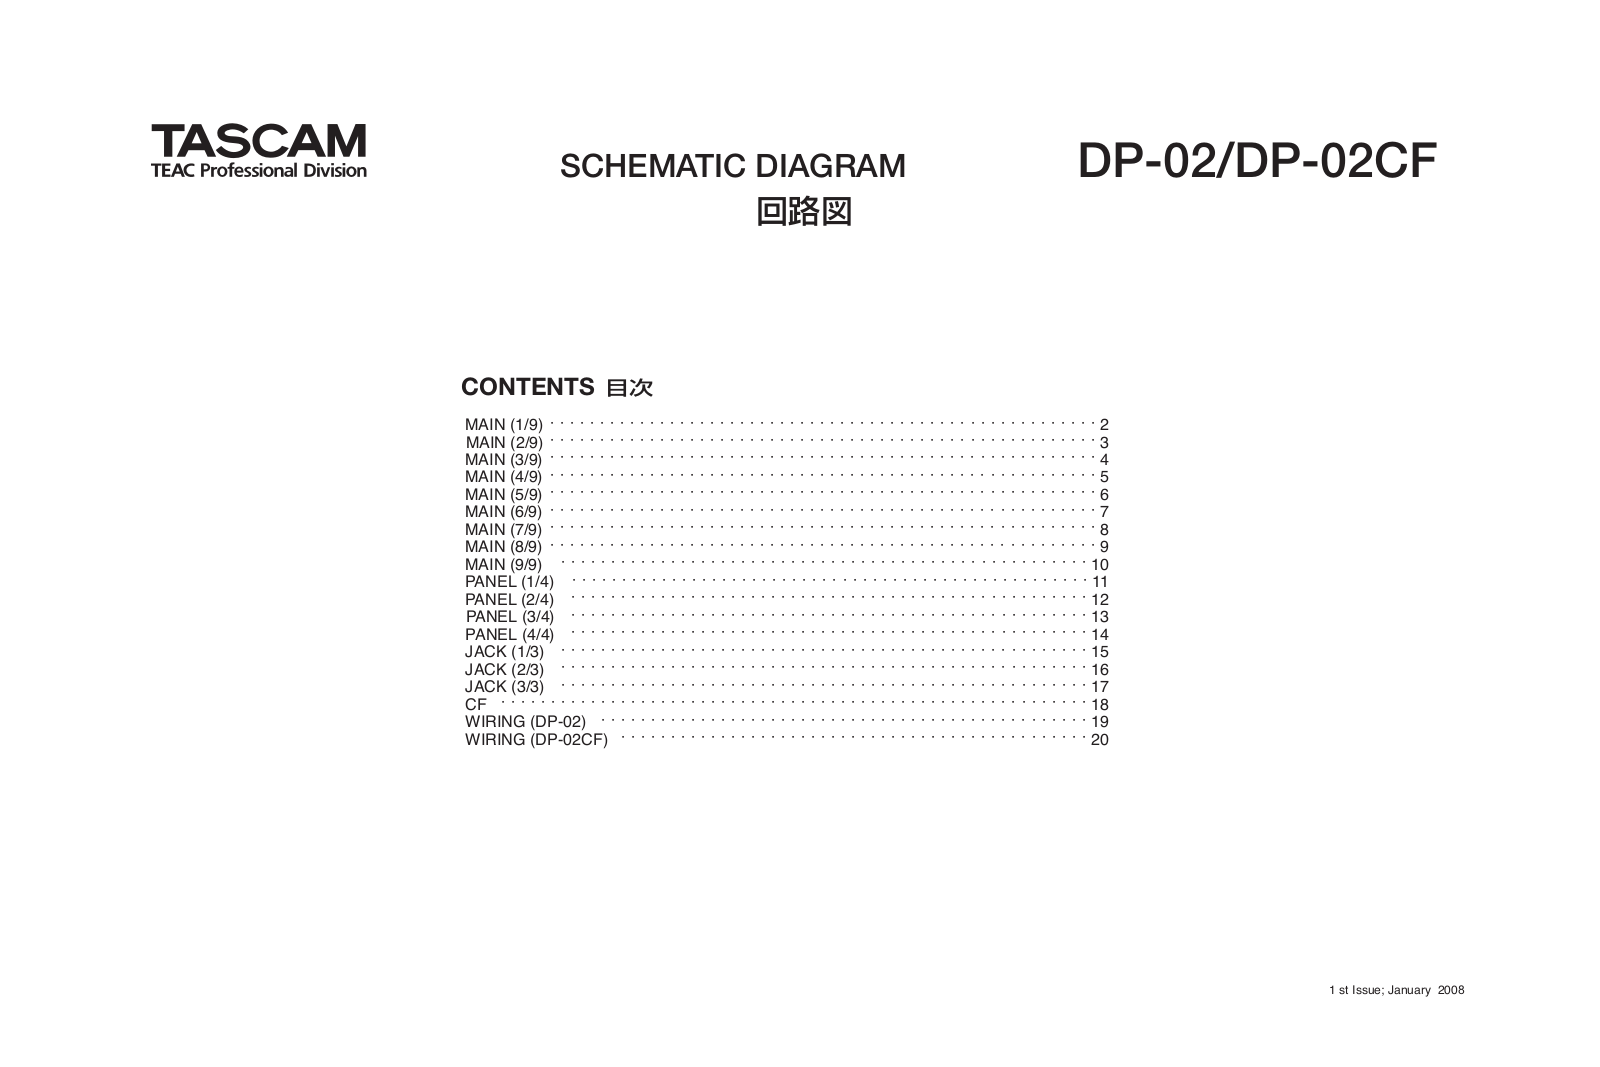 Tascam DP-02, DP-02CF Schematic